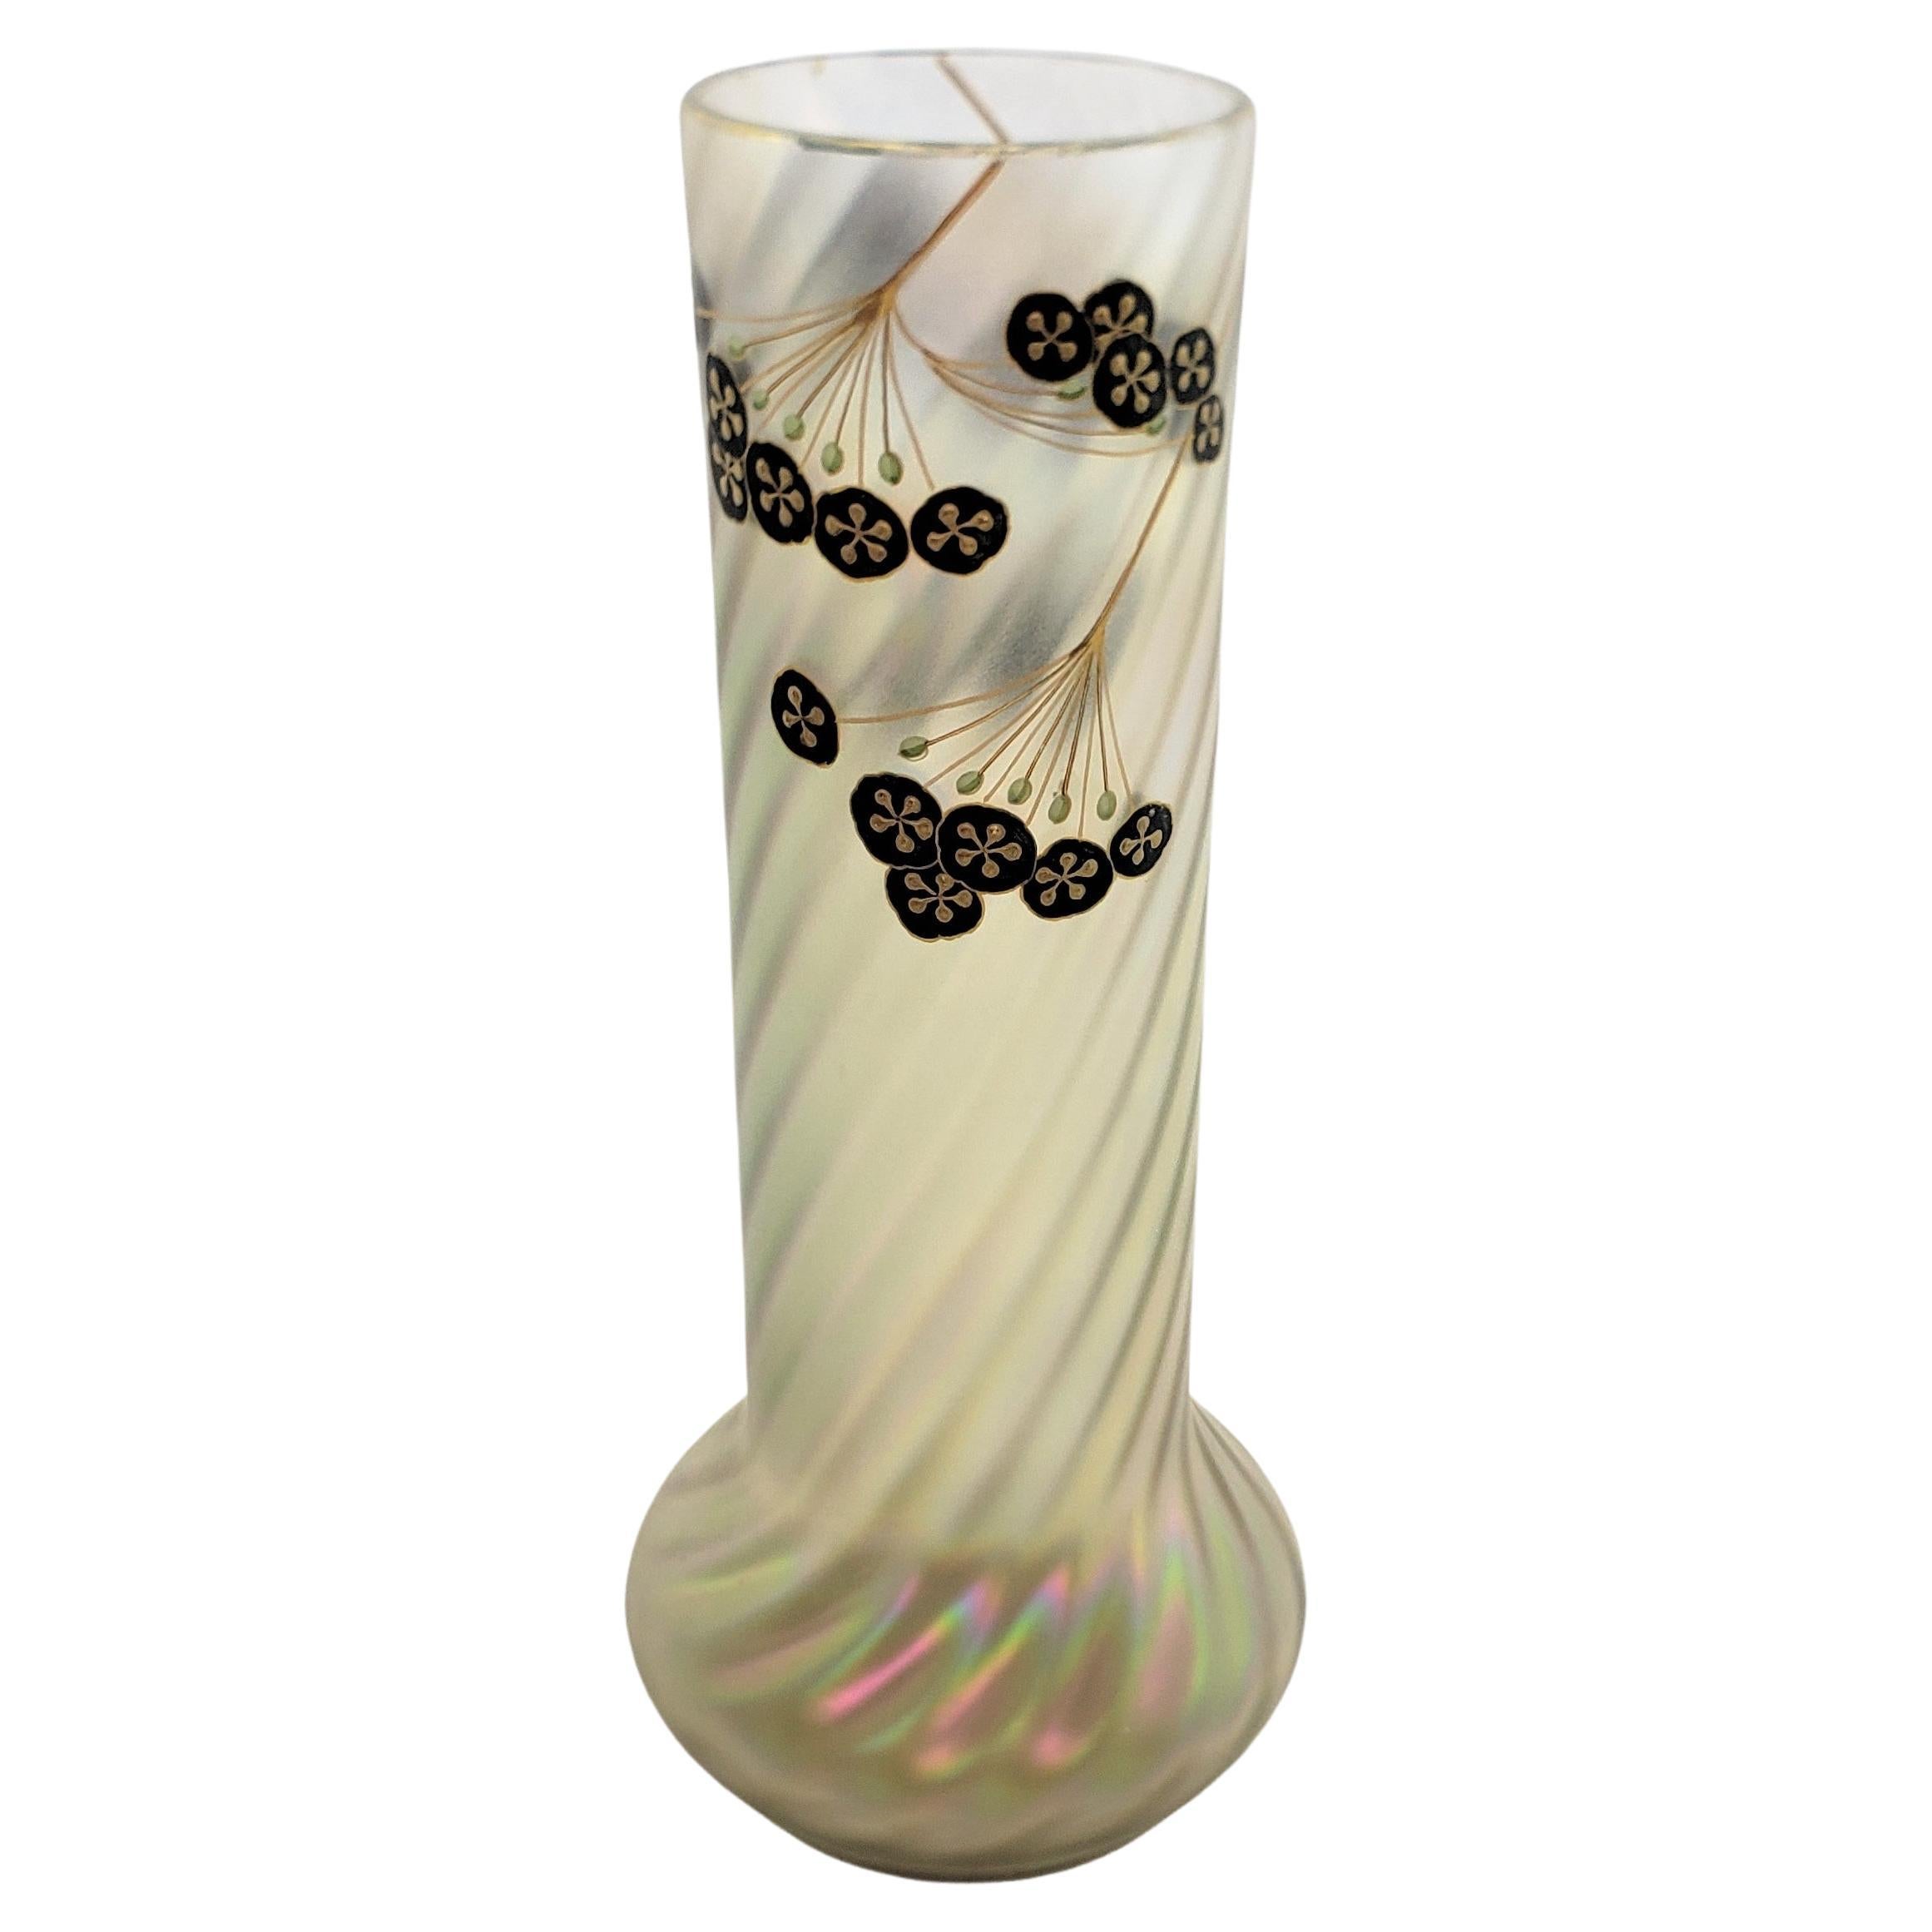 Antique Art Nouveau Iridescent Art Glass Vase with Enamel Floral Decoration For Sale